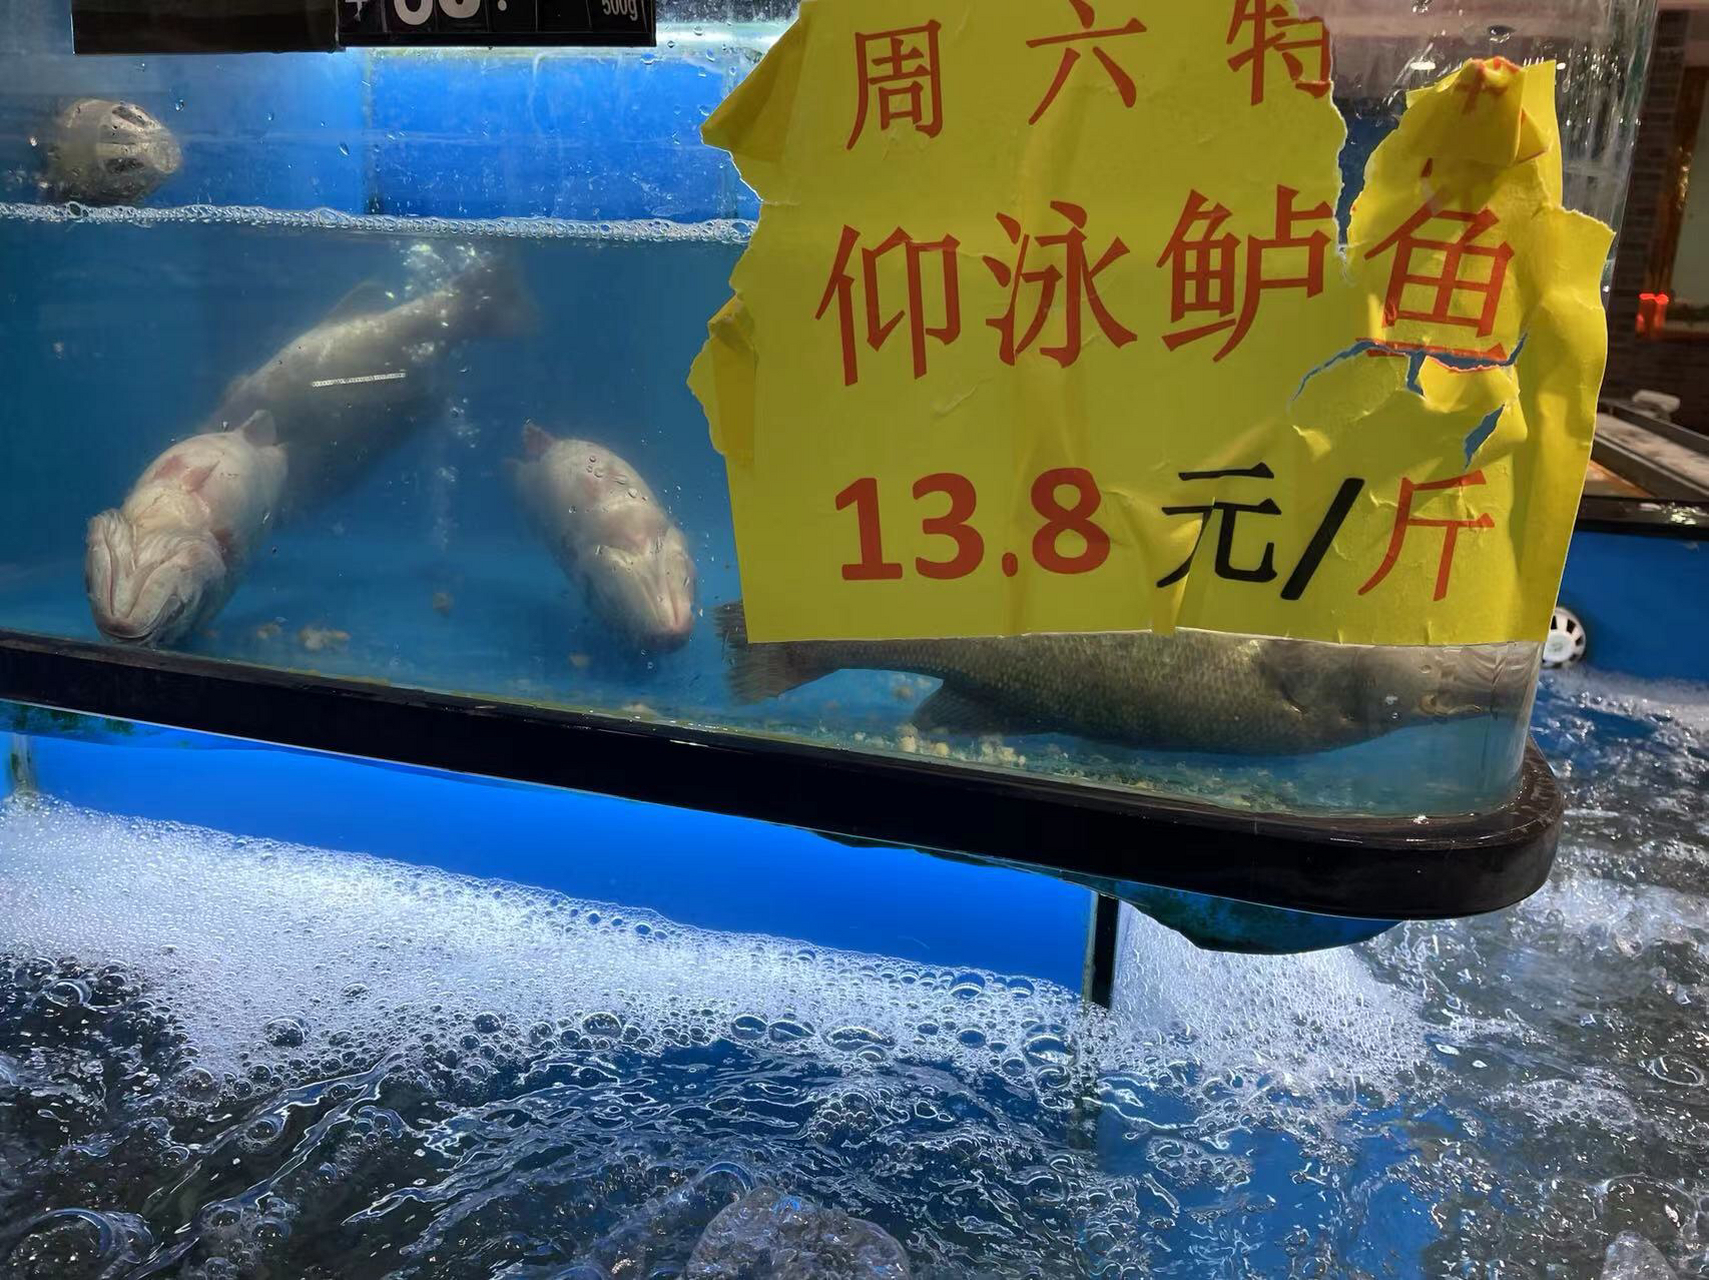 两条在仰泳的鲈鱼 逛超市看见水产区域打出的招牌,啥个叫仰泳的鲈鱼